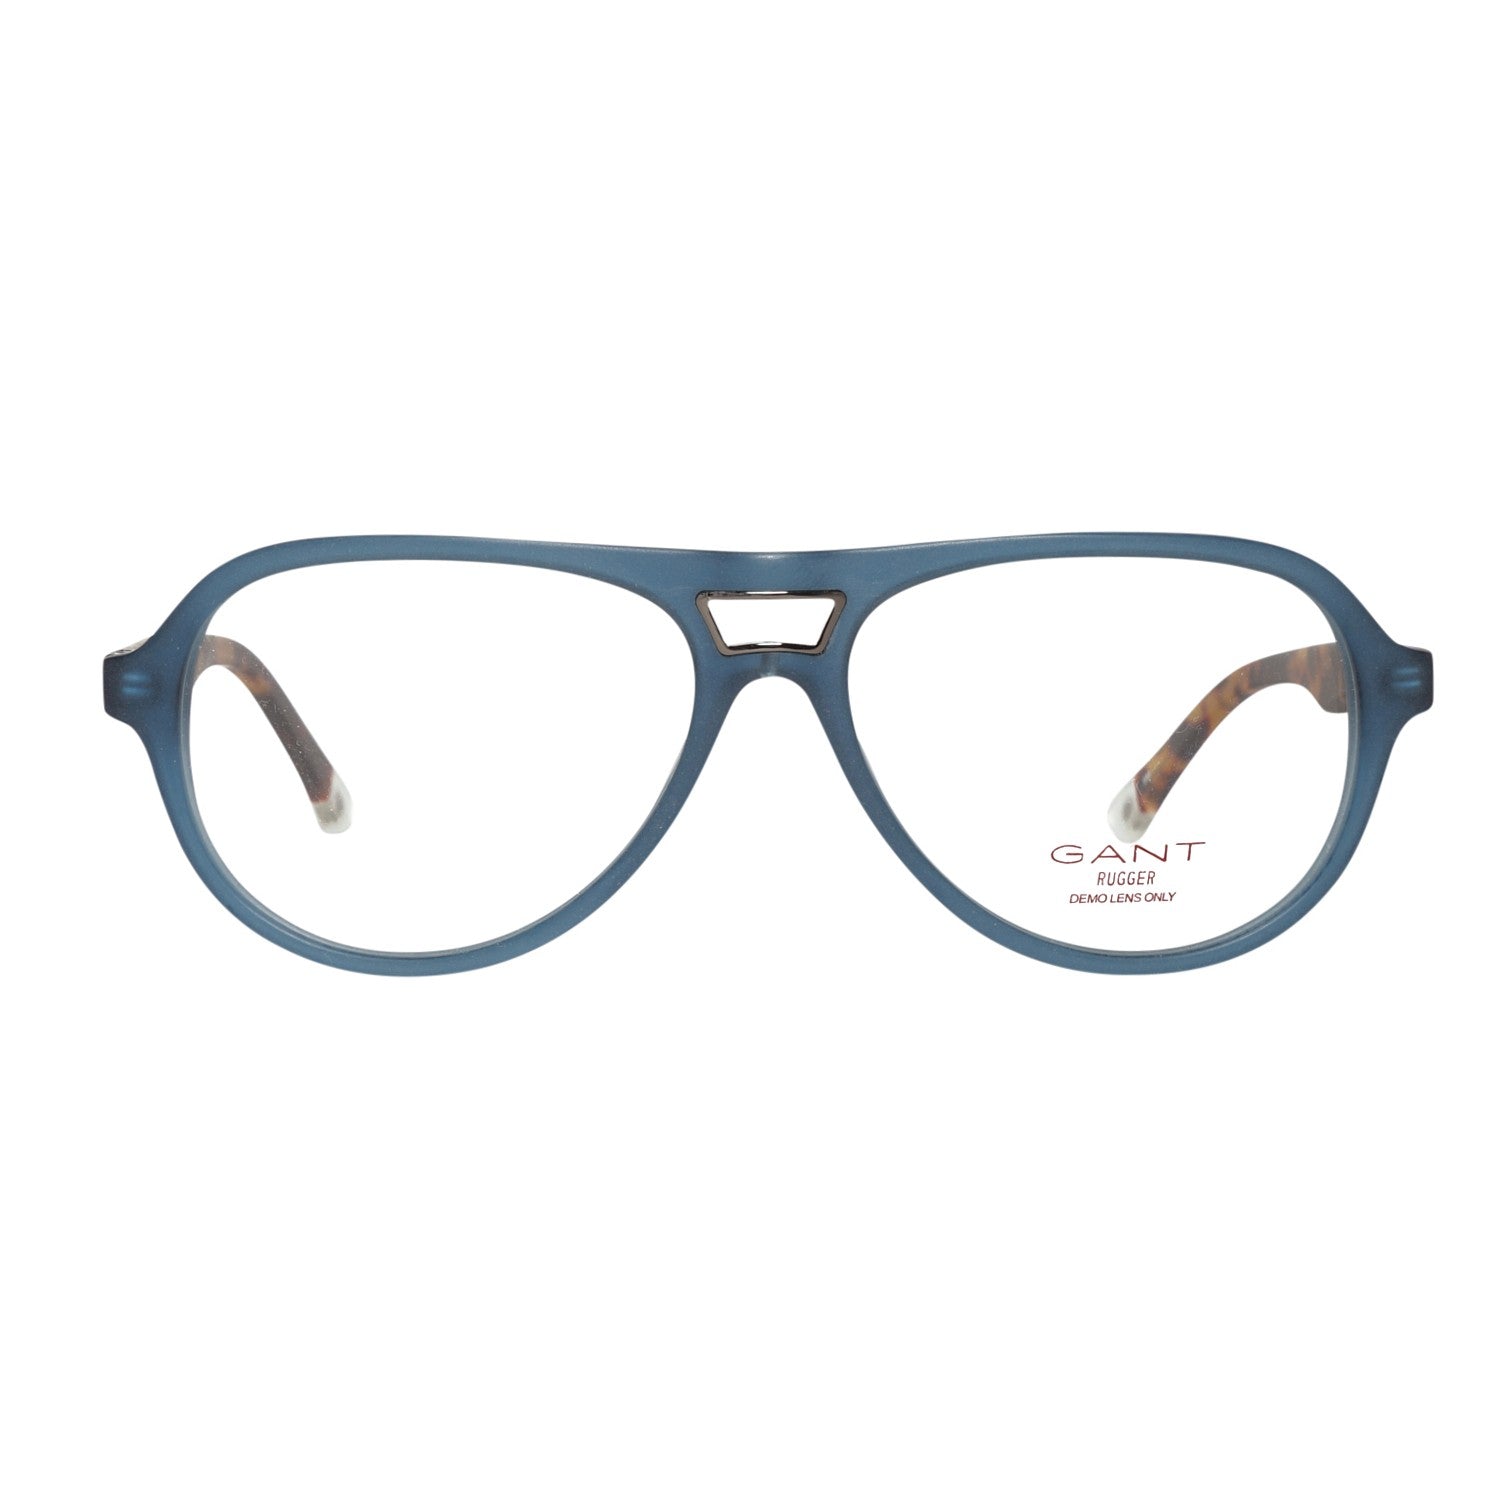 Gant Frames Gant Glasses Frames GRA099 L78 54 | GR 5002 MNVTO 54 Eyeglasses Eyewear UK USA Australia 